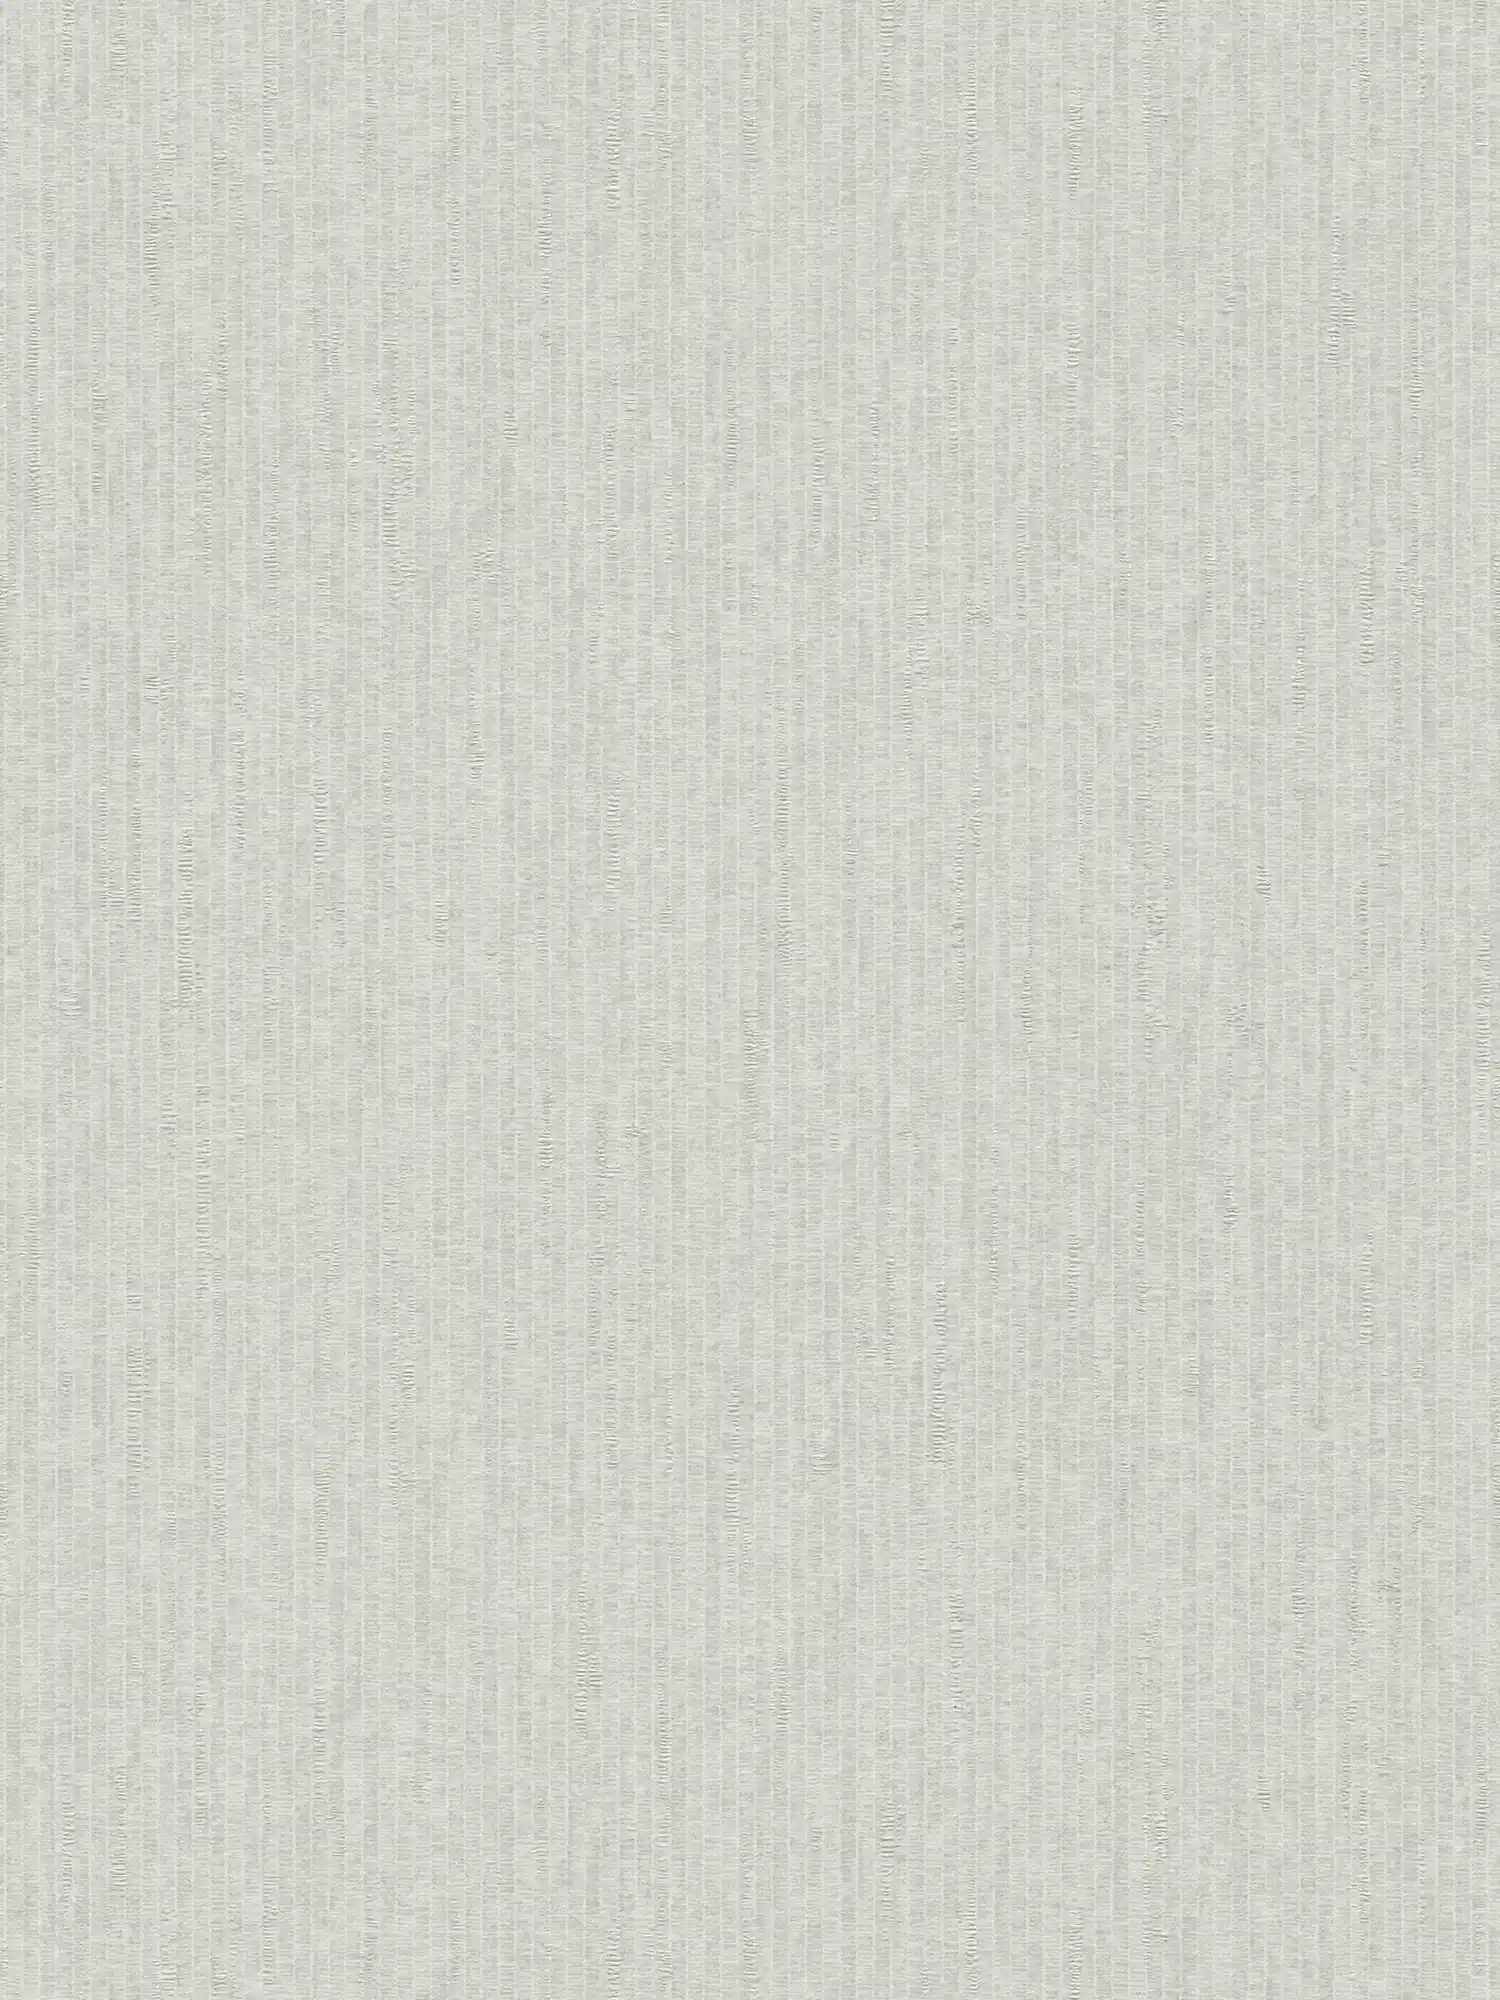         Lichtgrijs behang met textiellook & lijneffect - Grijs
    